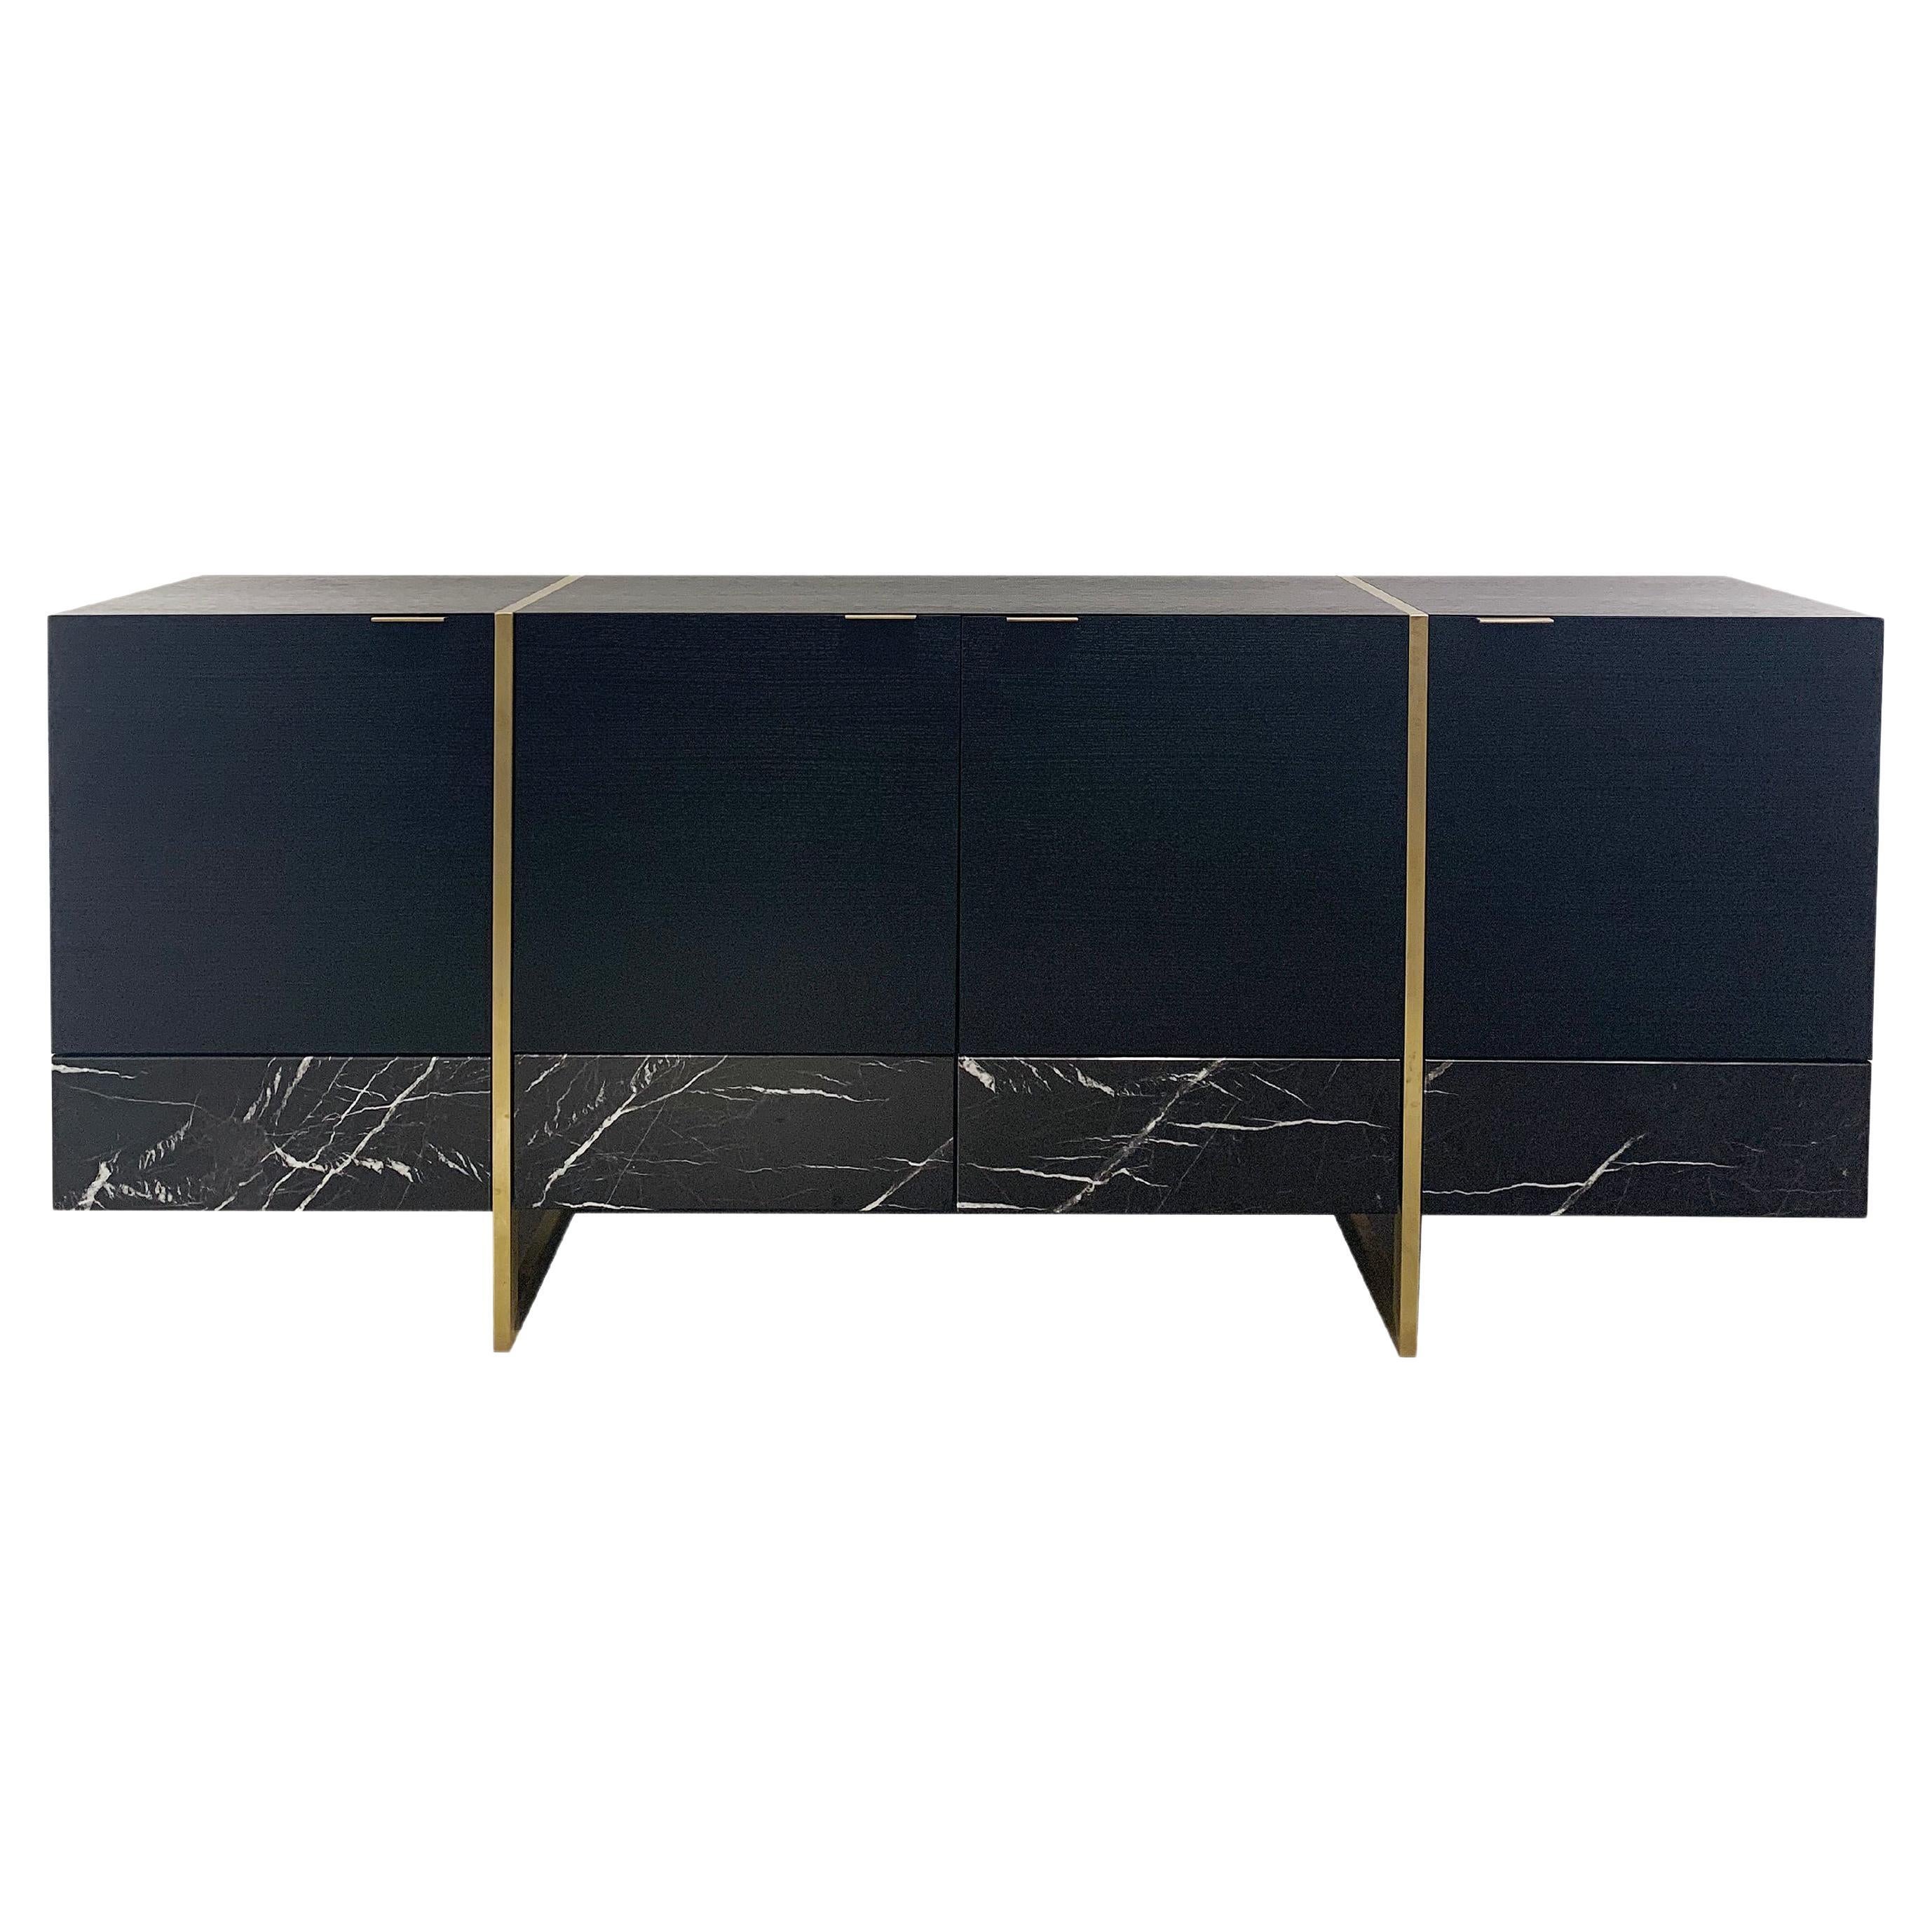 Stripe, Marble, Wood, Brass, Sideboard, Cabinet, Modern, 21st Century, Bespoke